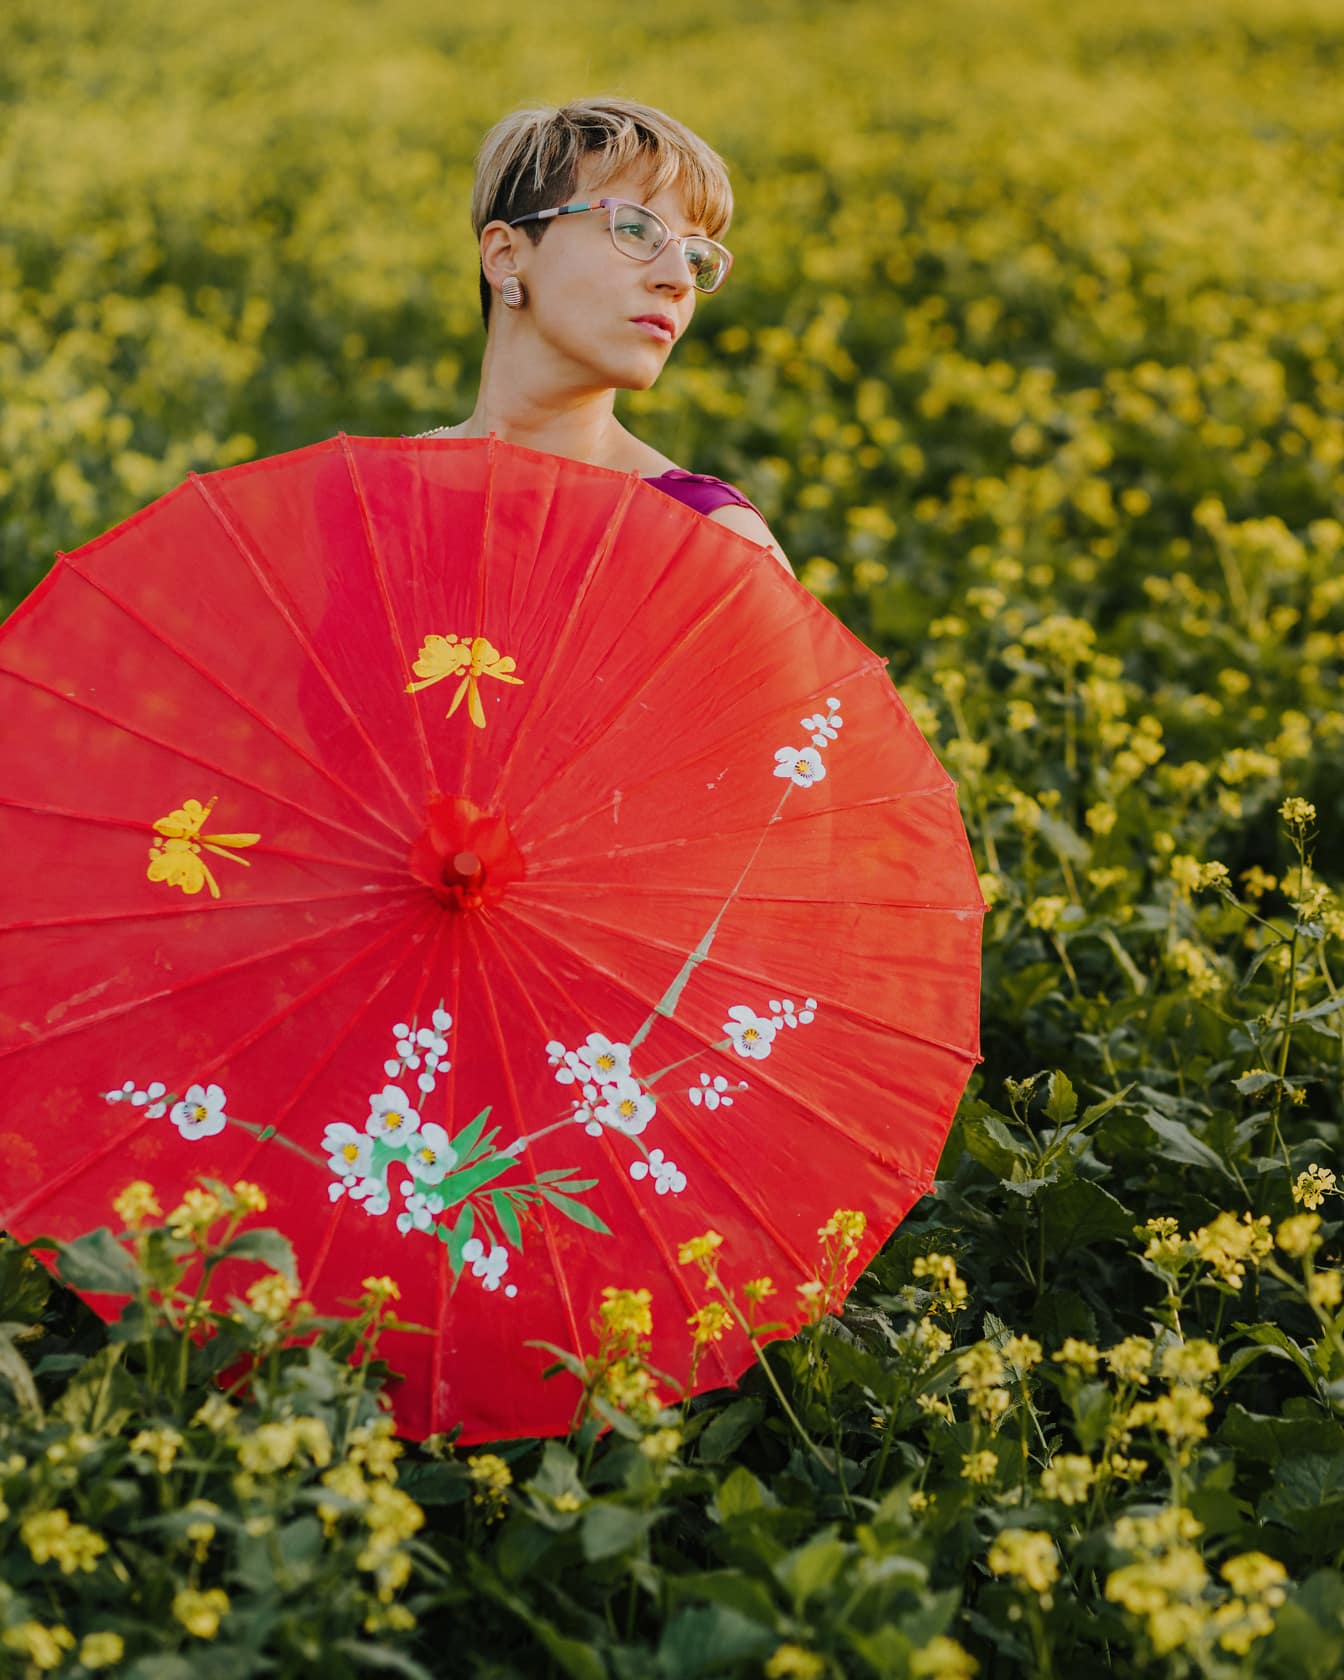 菜種に赤い傘を持つ魅力的なブロンドの若い女性